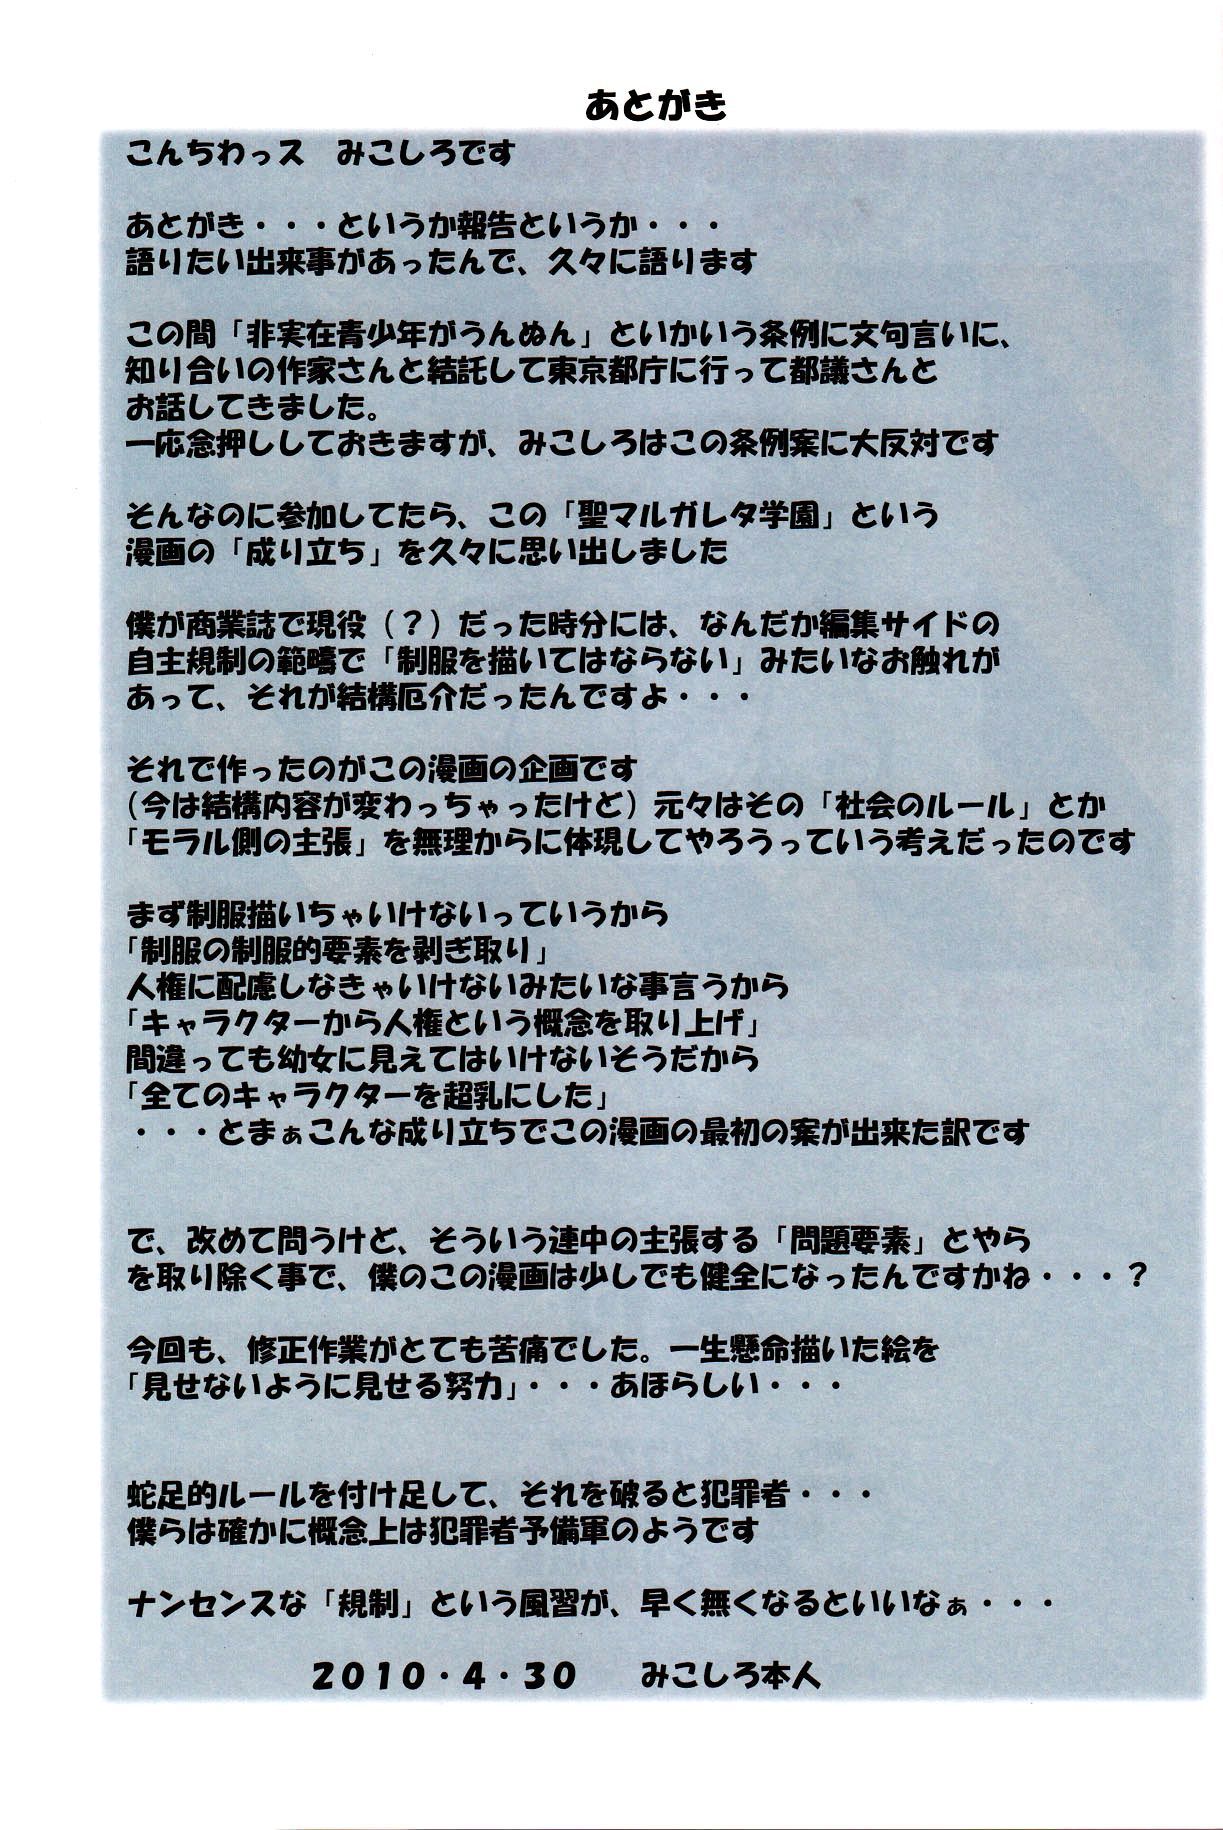 (comic1â˜†4) algolagnia (mikoshiro honnin) st. margareta gakuen schwarz Datei 2 b.e.c. durchsucht Teil 3